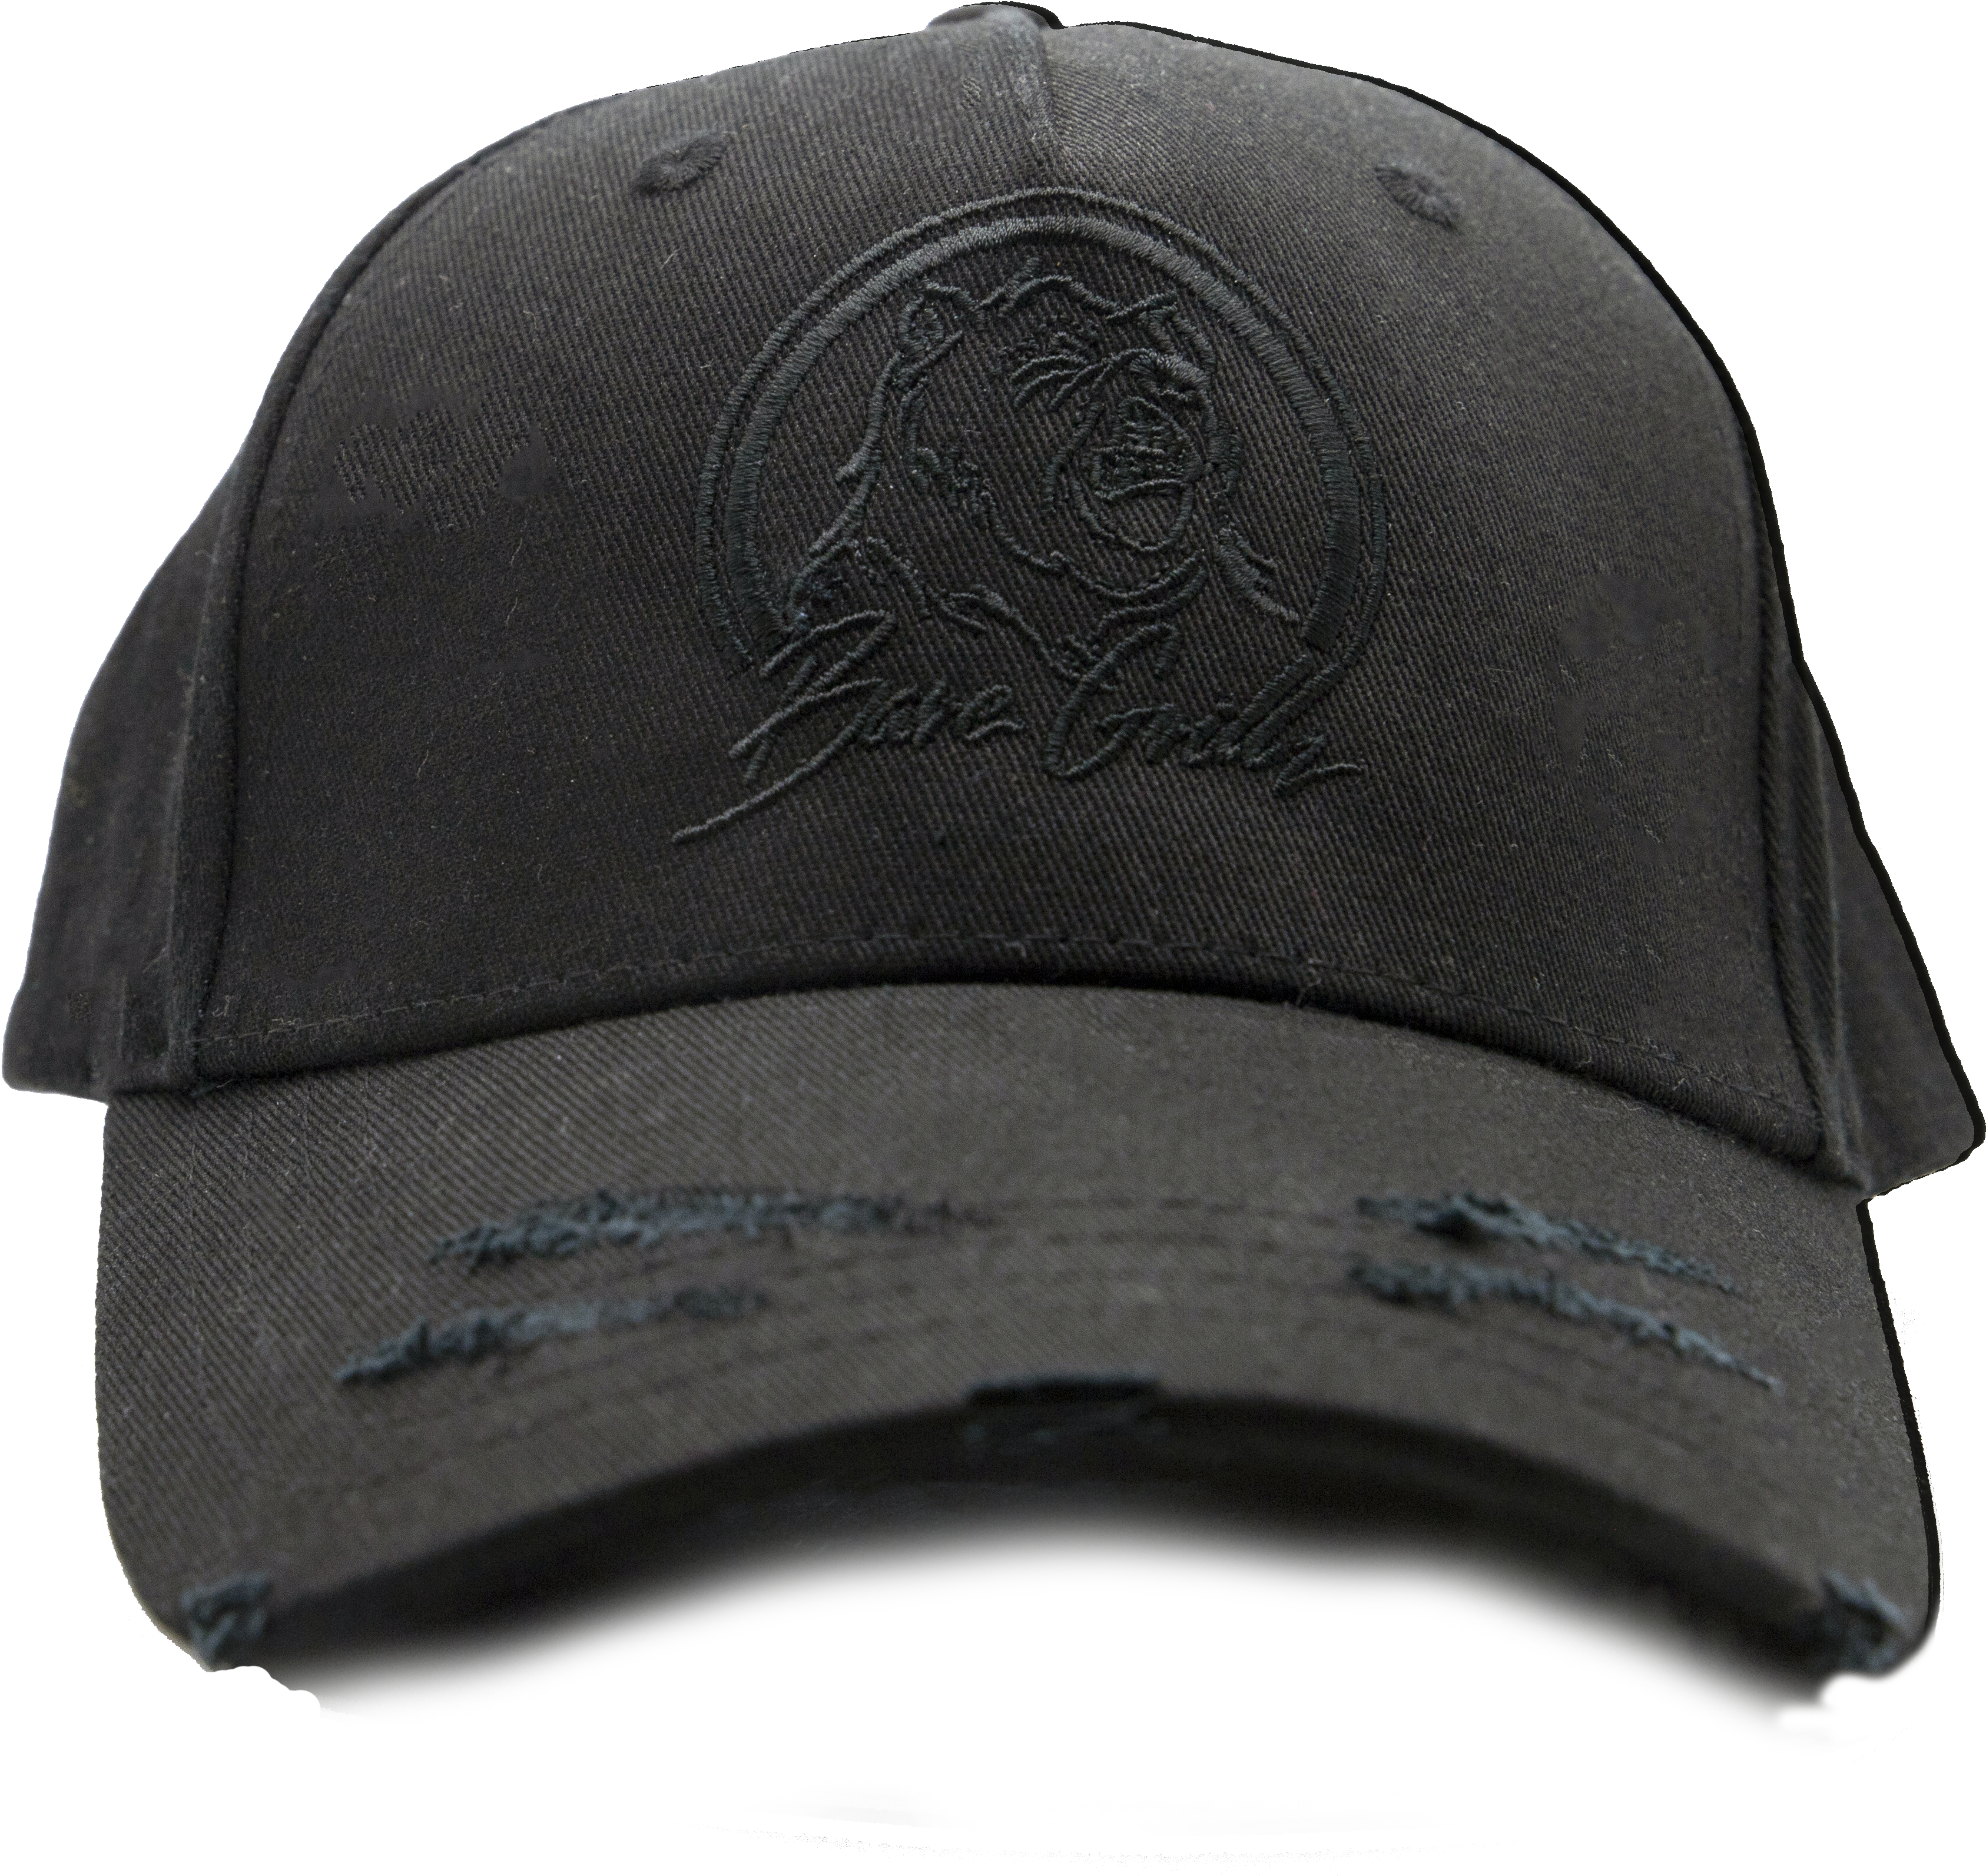 Black Cap Bare Grillz - Baseball Cap (3921x3921), Png Download